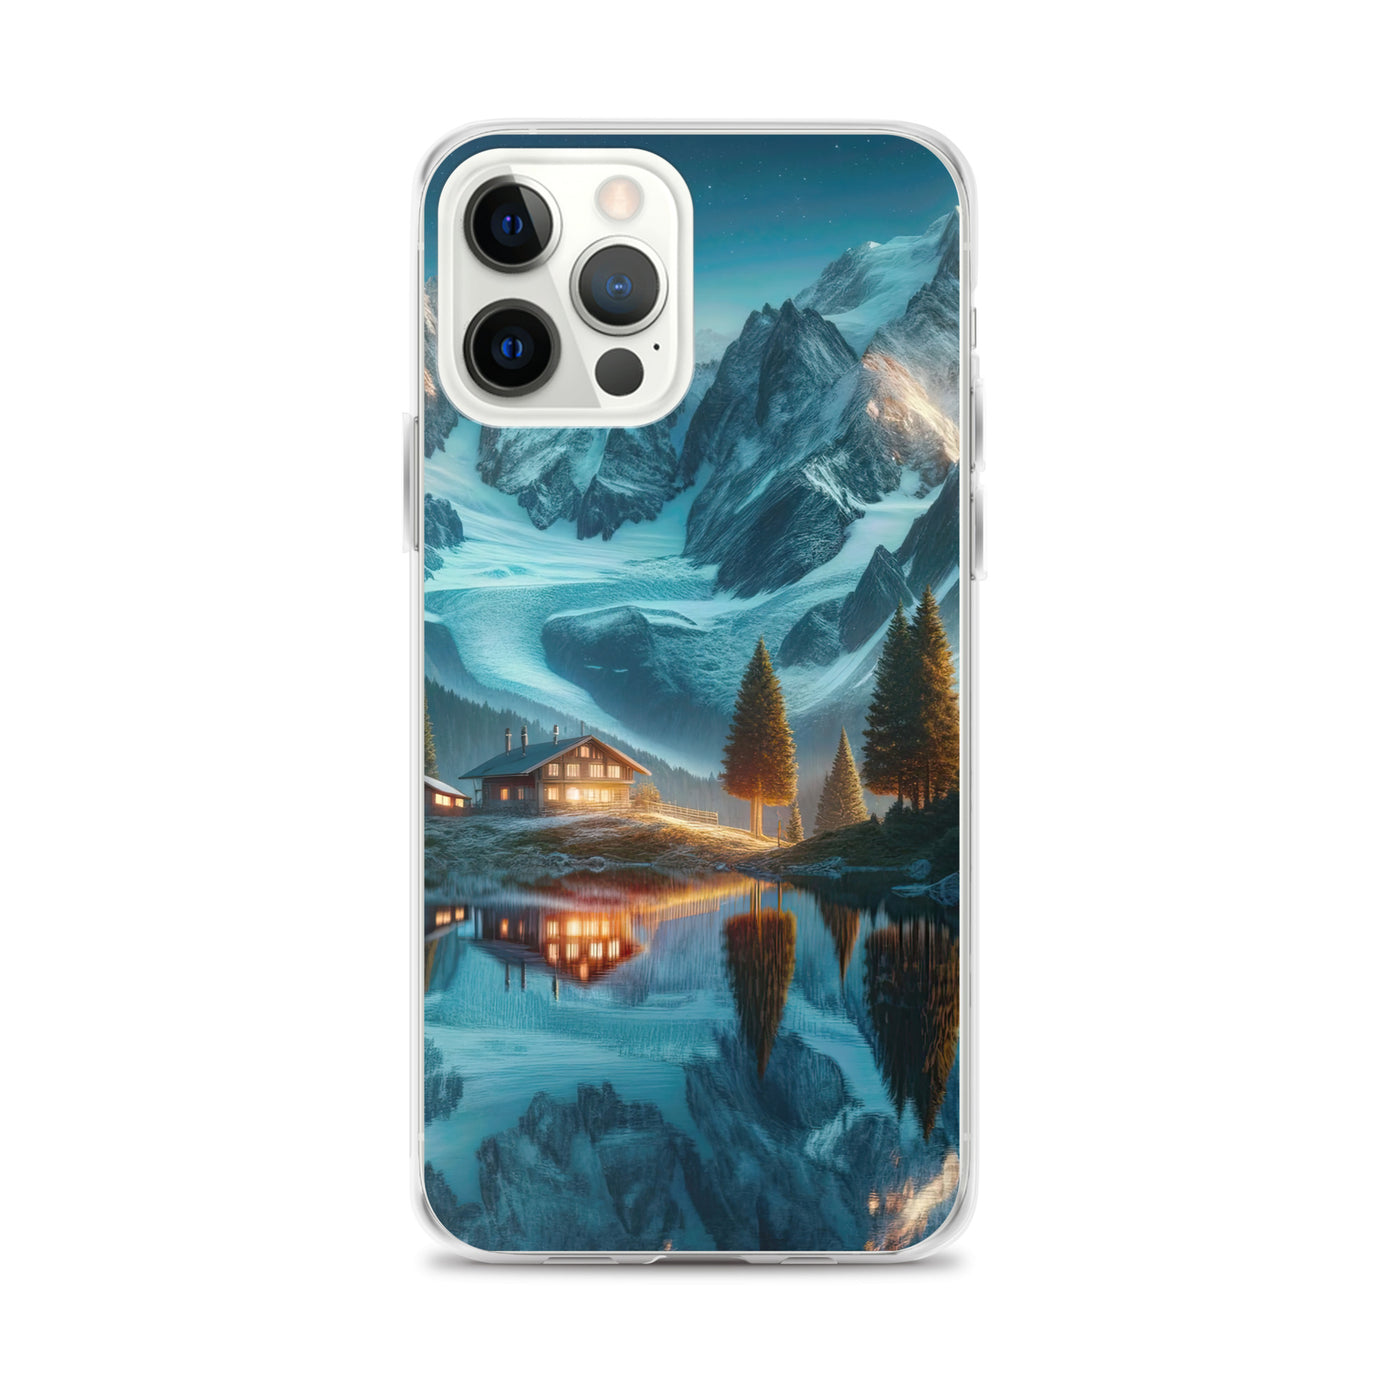 Stille Alpenmajestätik: Digitale Kunst mit Schnee und Bergsee-Spiegelung - iPhone Schutzhülle (durchsichtig) berge xxx yyy zzz iPhone 12 Pro Max